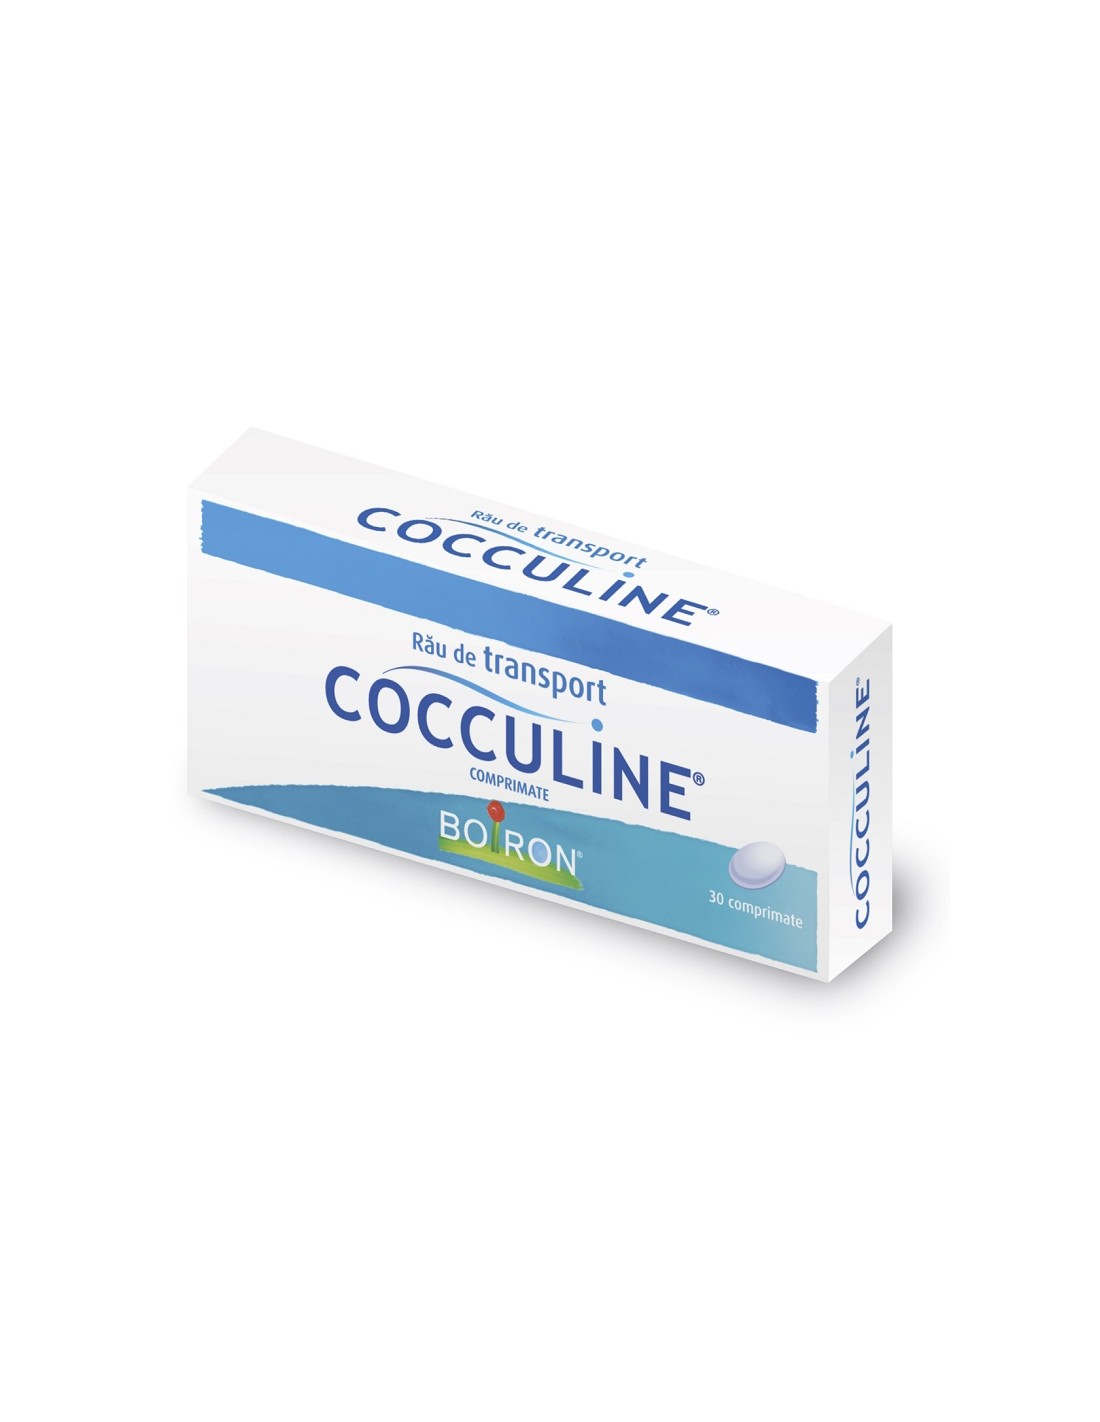 Cocculine, 30 comprimate, Boiron - GREATA - BOIRON